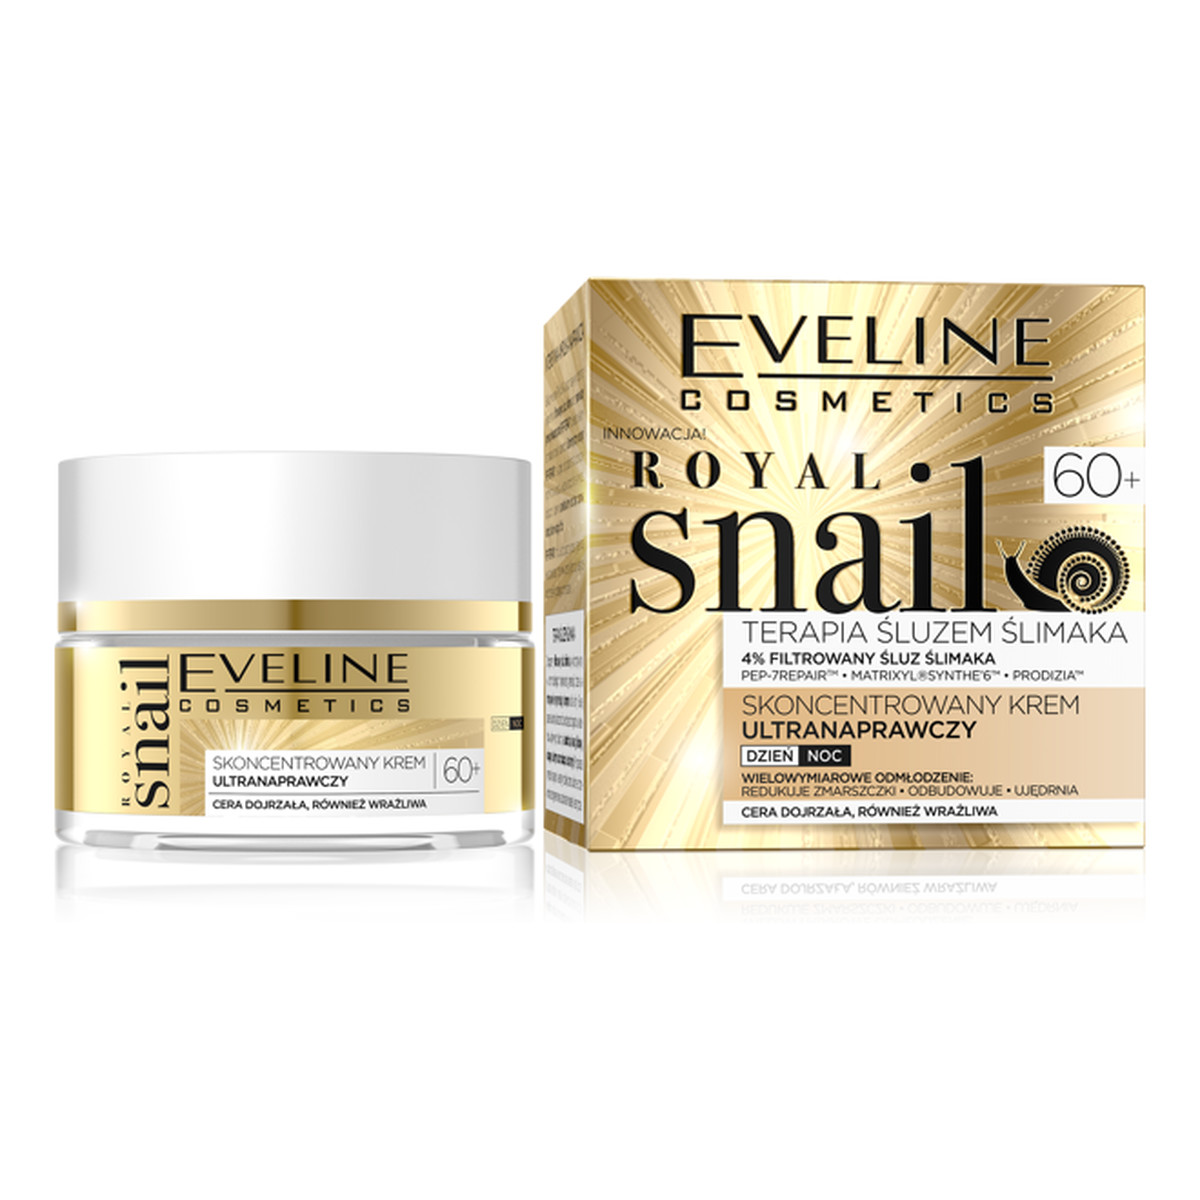 Eveline Royal Snail skoncentrowany krem ultranaprawczy 60+ na dzień i na noc 50ml